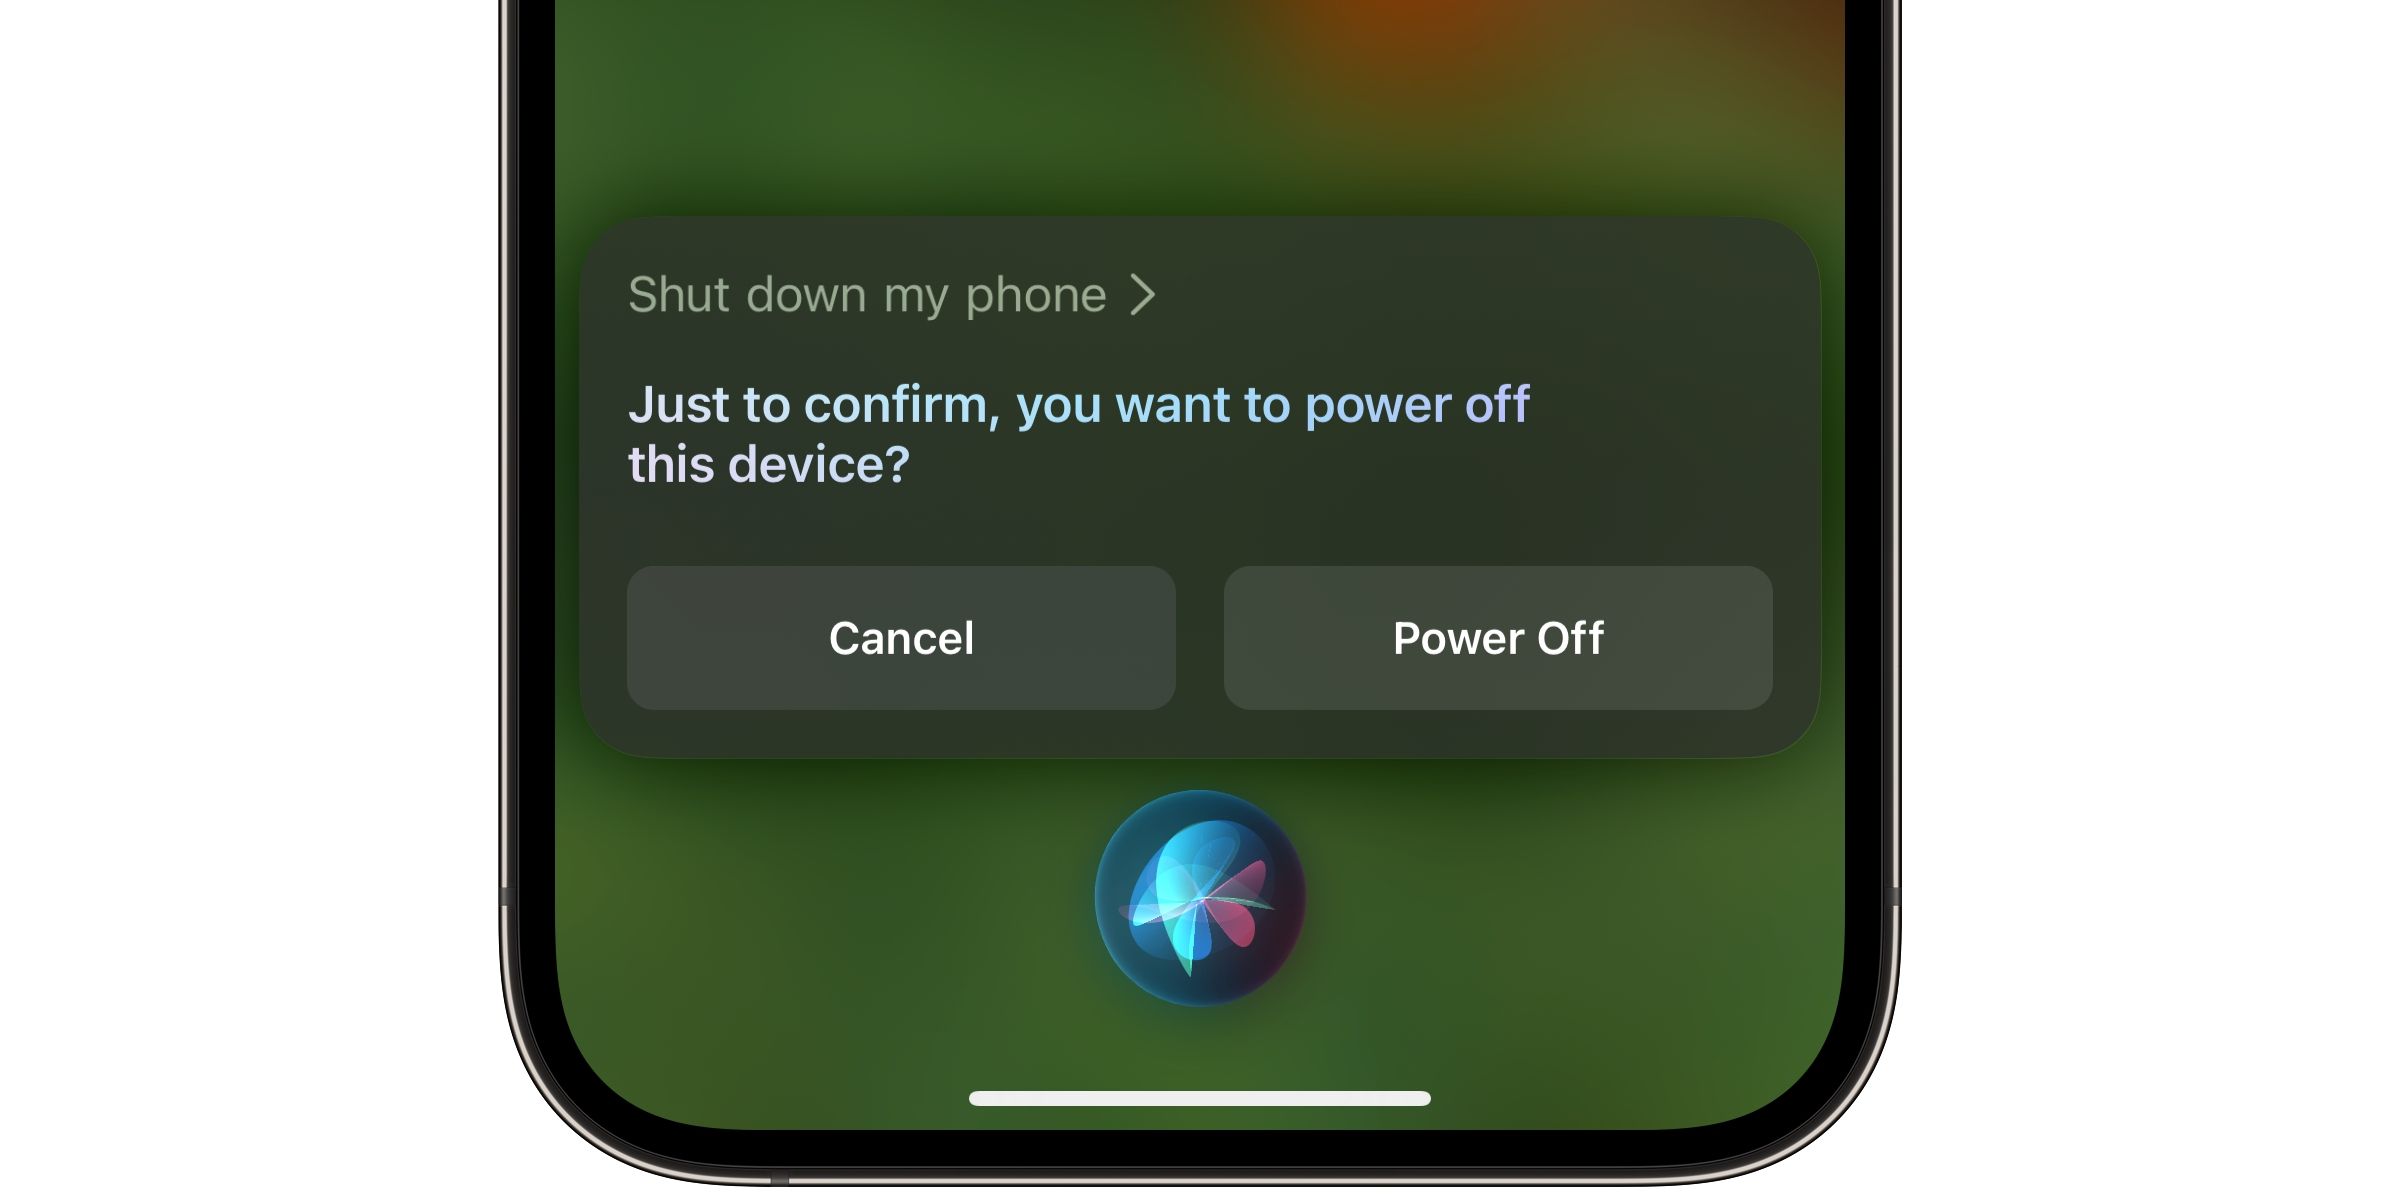 Lời nhắc tắt Siri của iOS 16.2 trên iPhone cung cấp các tùy chọn Hủy và Tắt nguồn